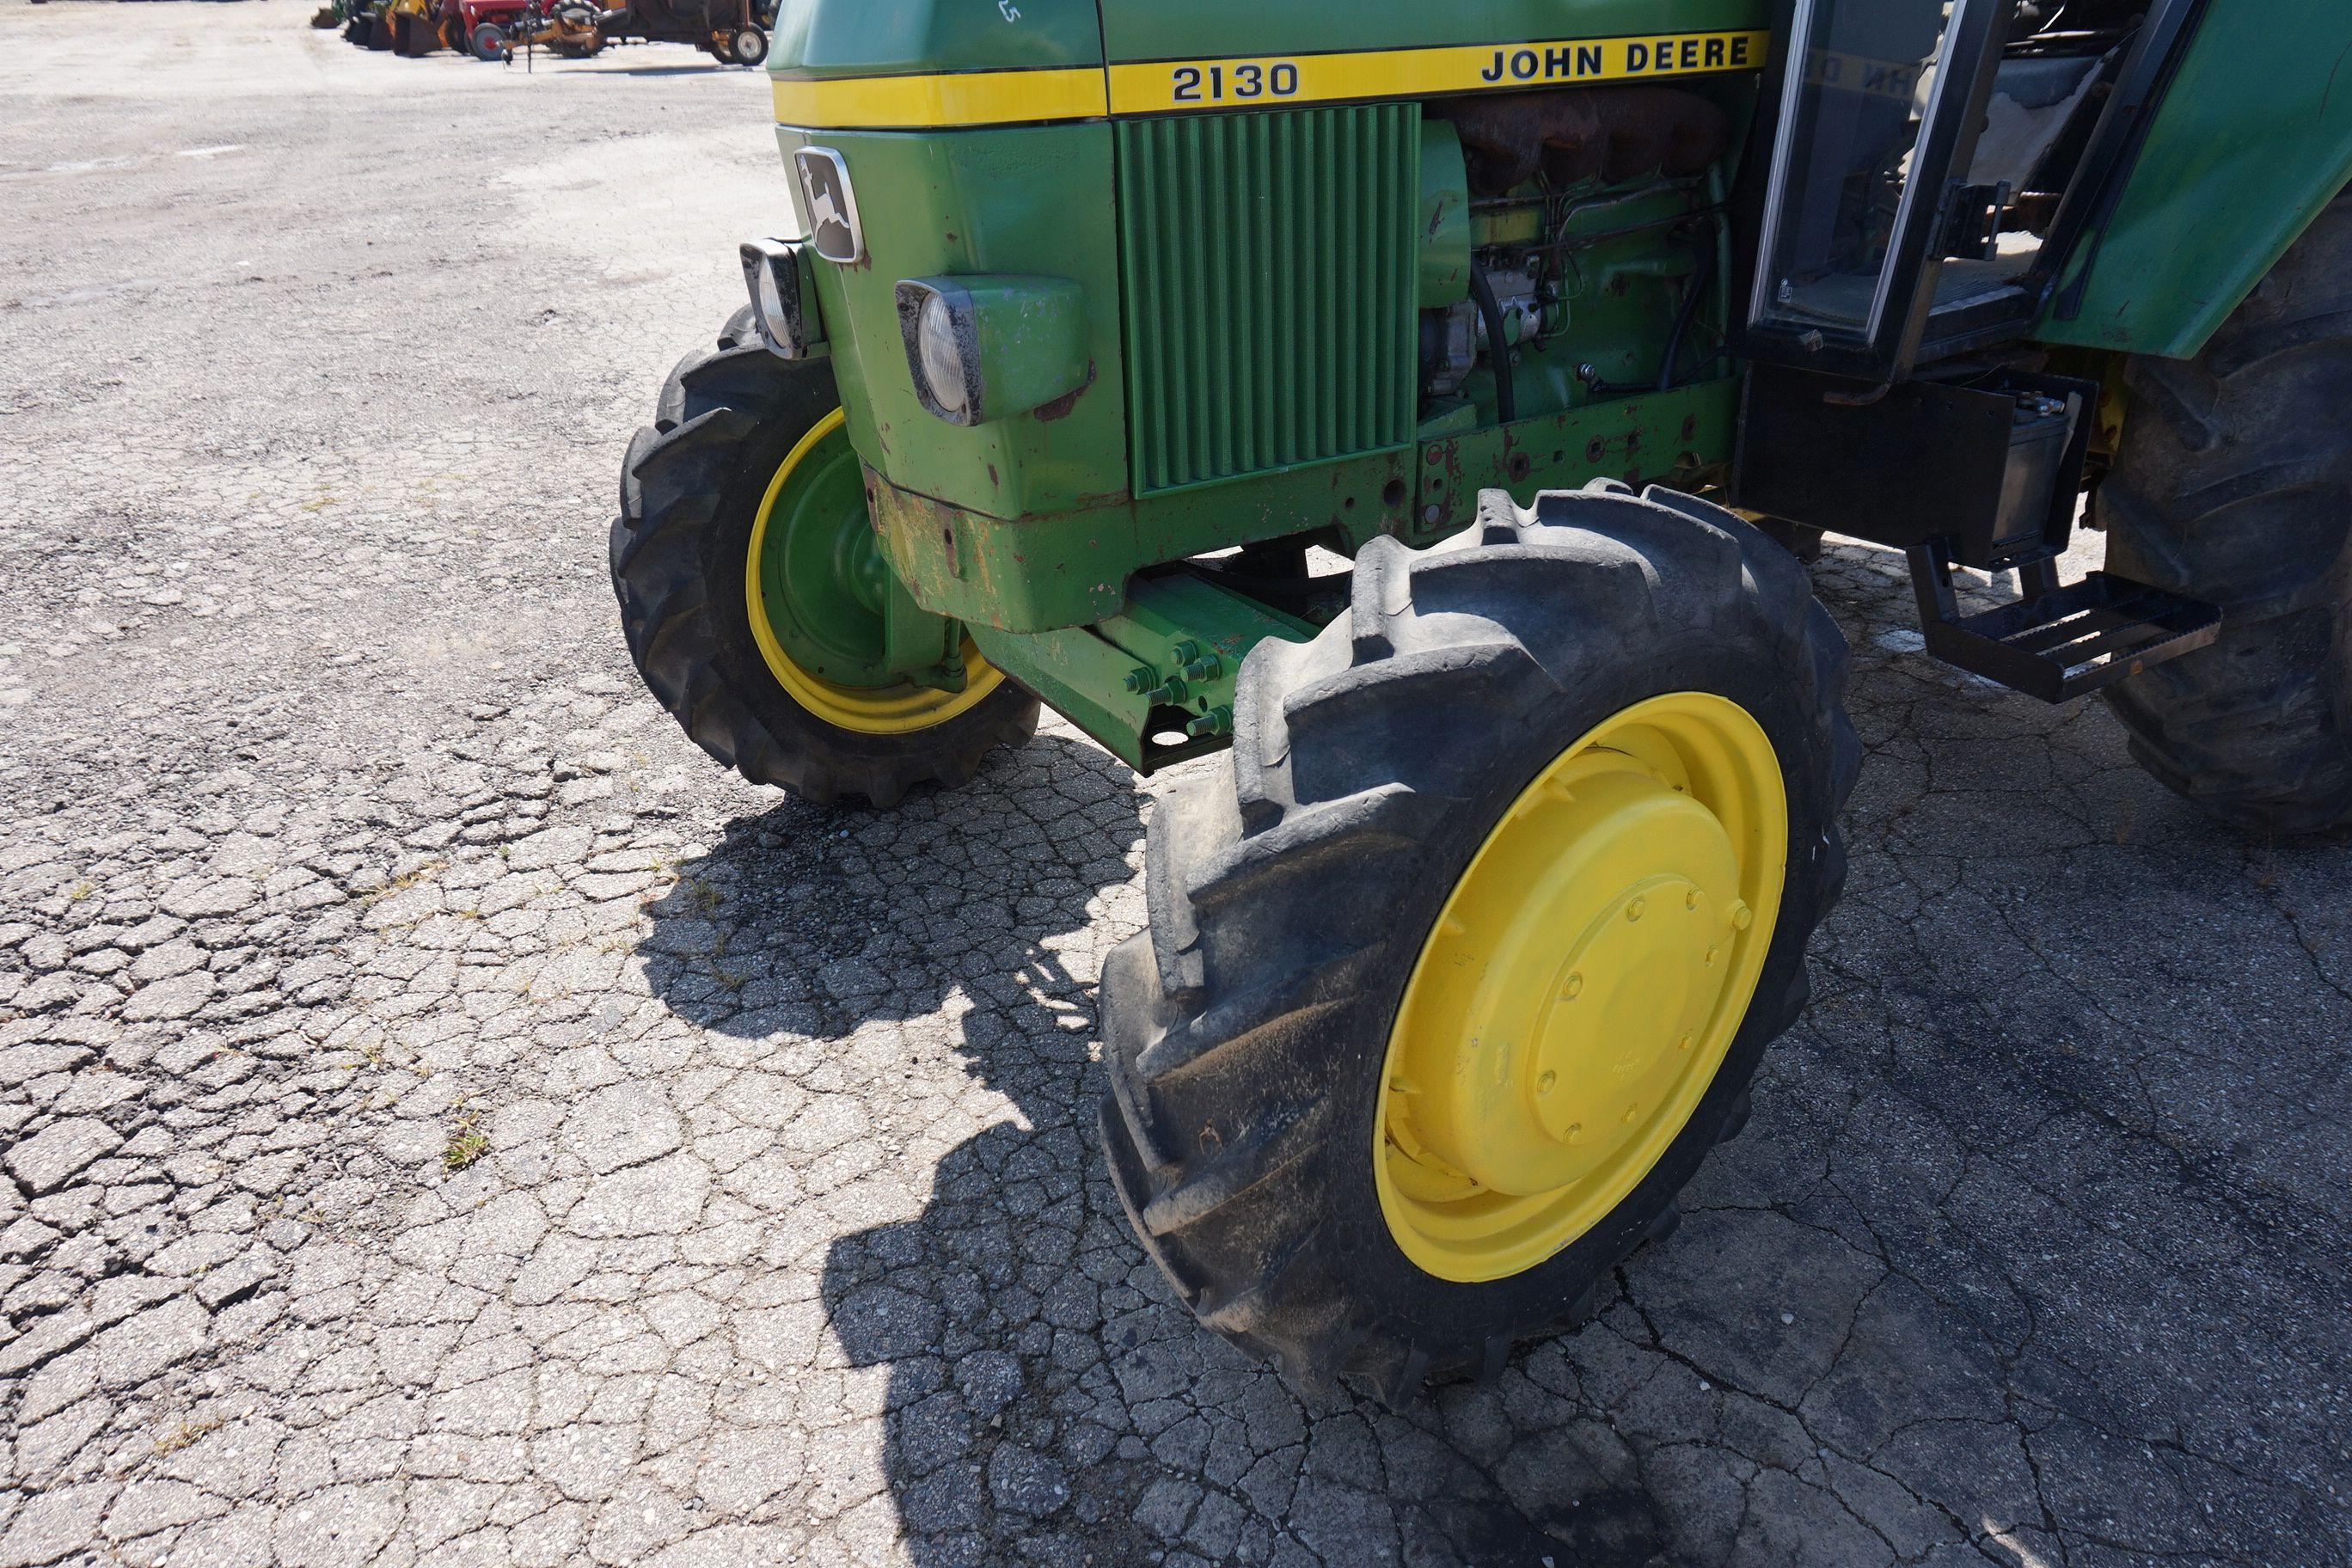 John Deere 2130 Diesel Tractor